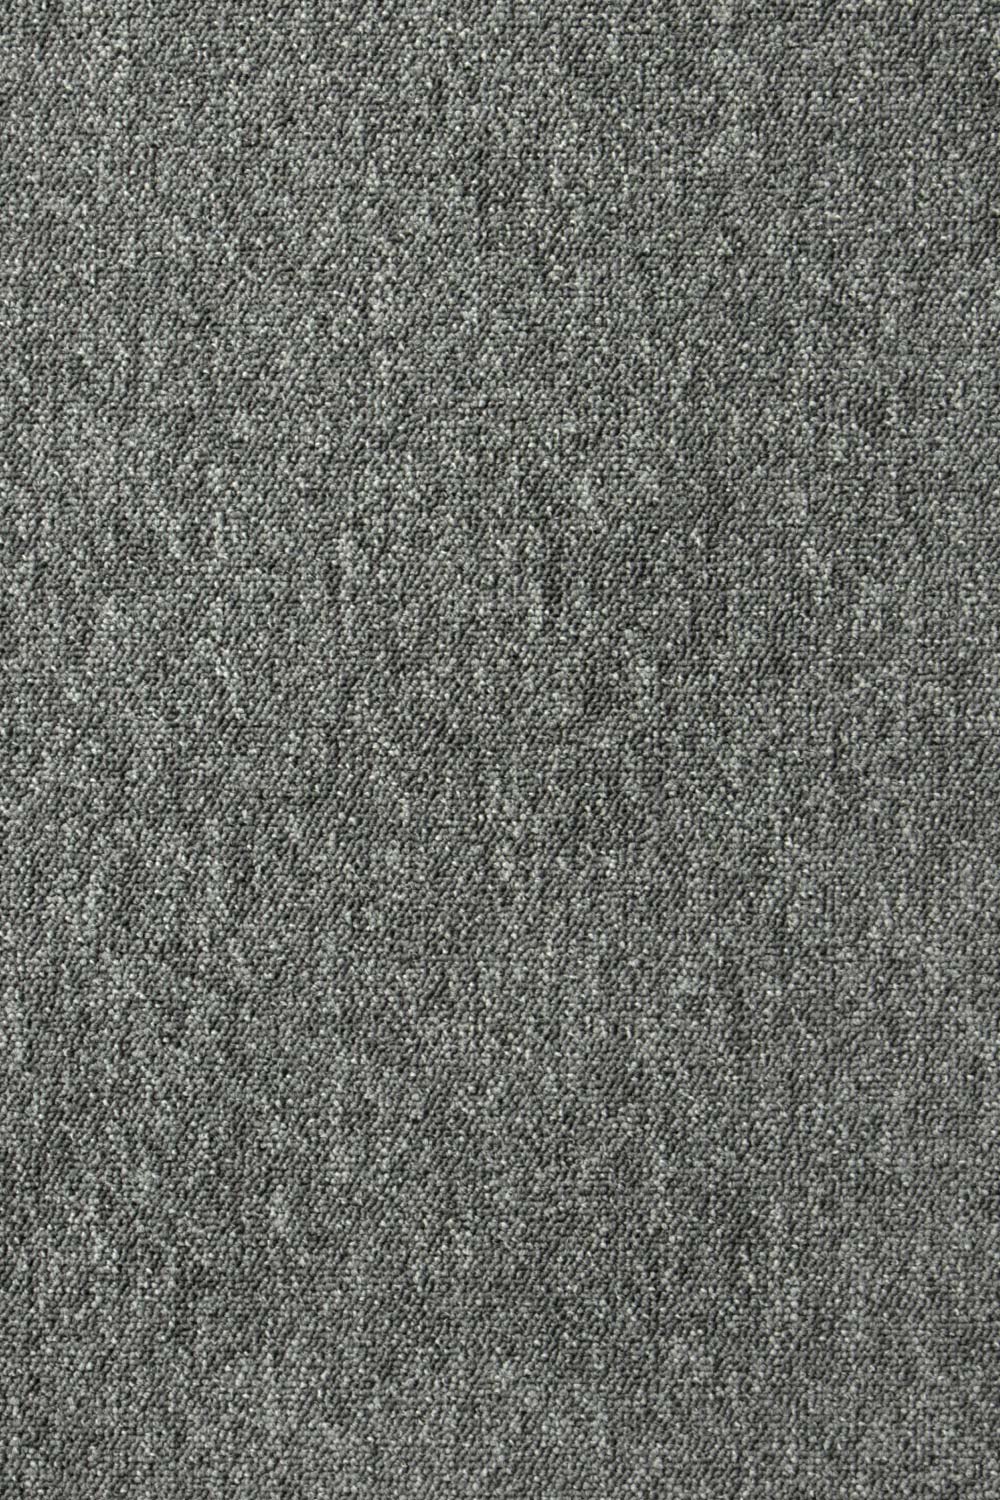 Metrážový koberec Lyon Solid 272 400 cm